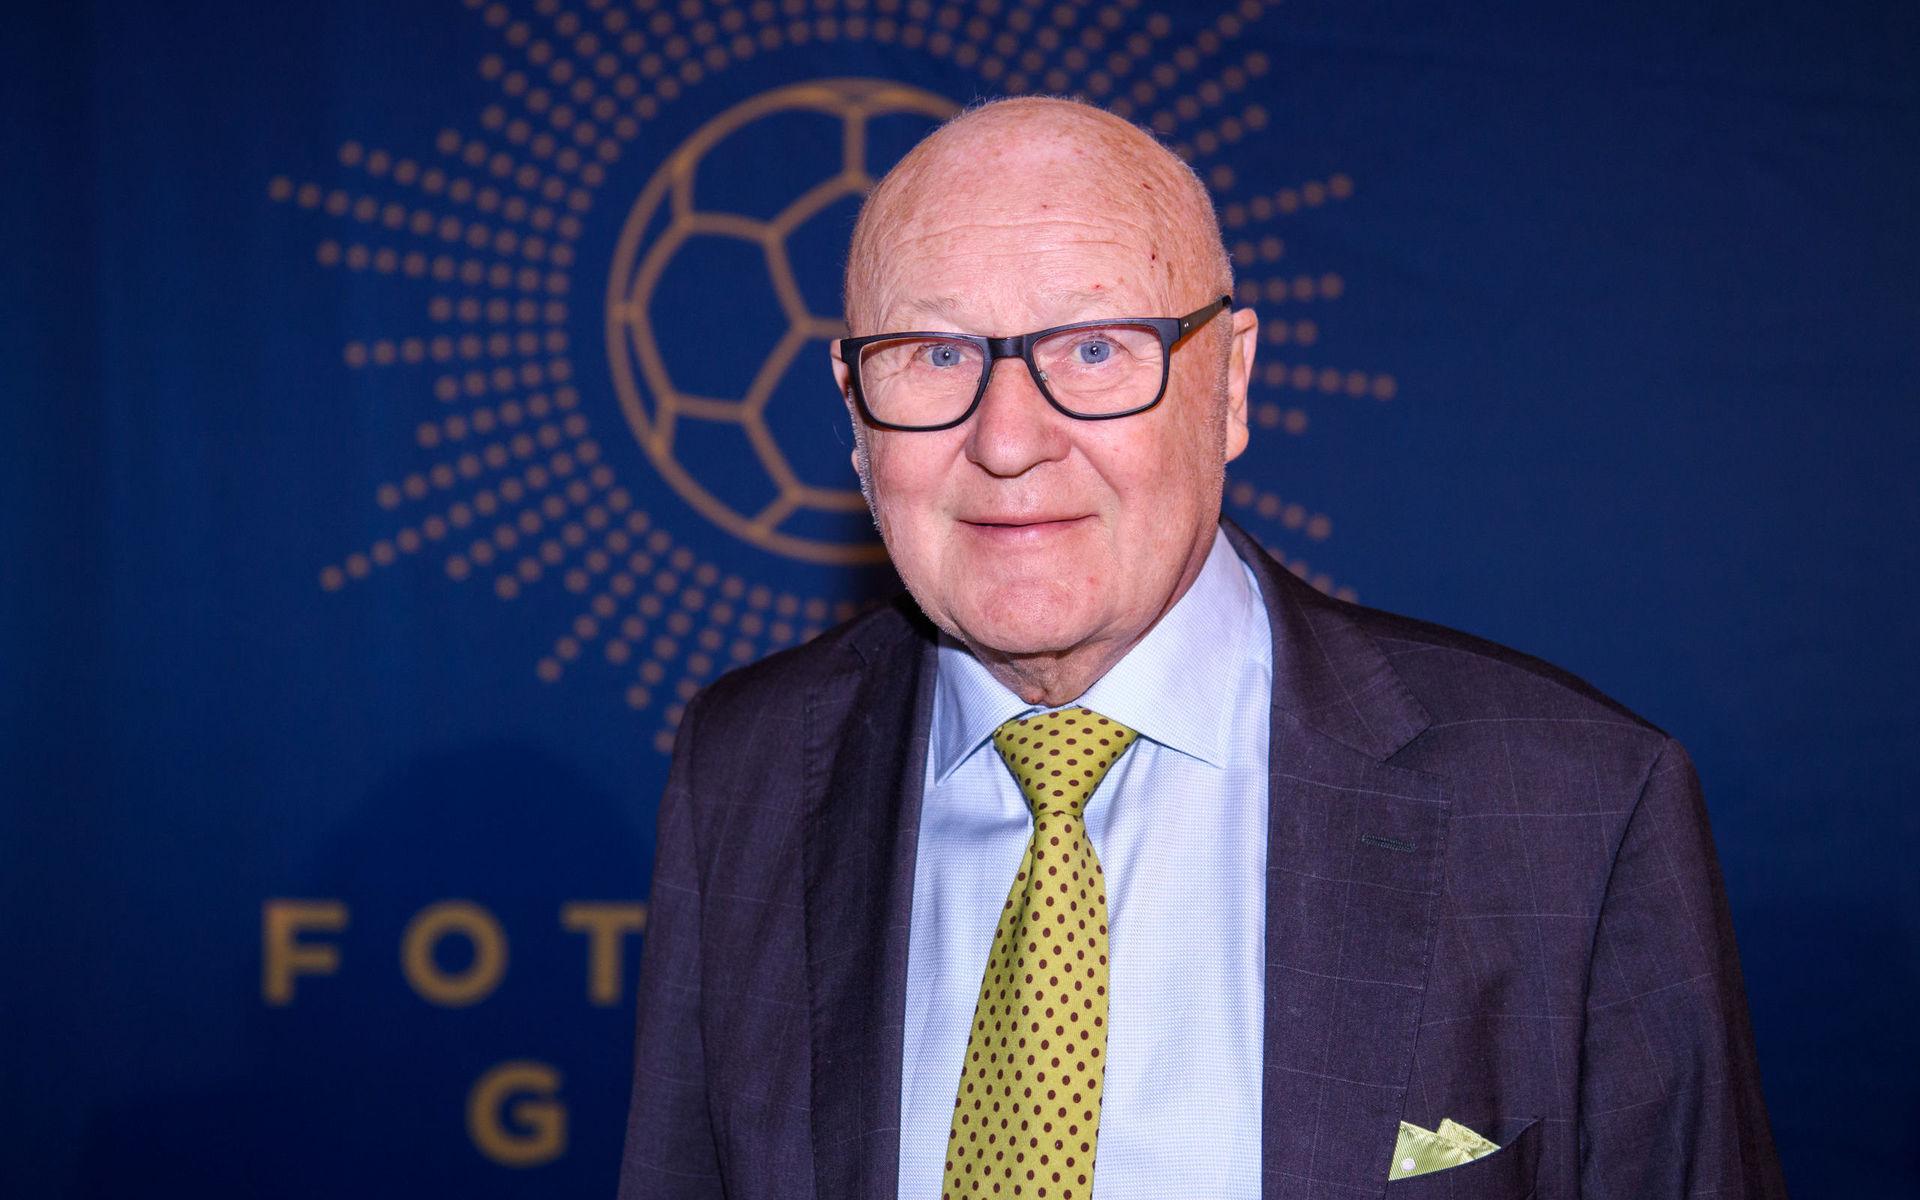 Lars Åke Lagrell var ordförande för fotbollförbundet under många år. Den tidigare fotbollsledaren har avlidit - han blev 80 år.